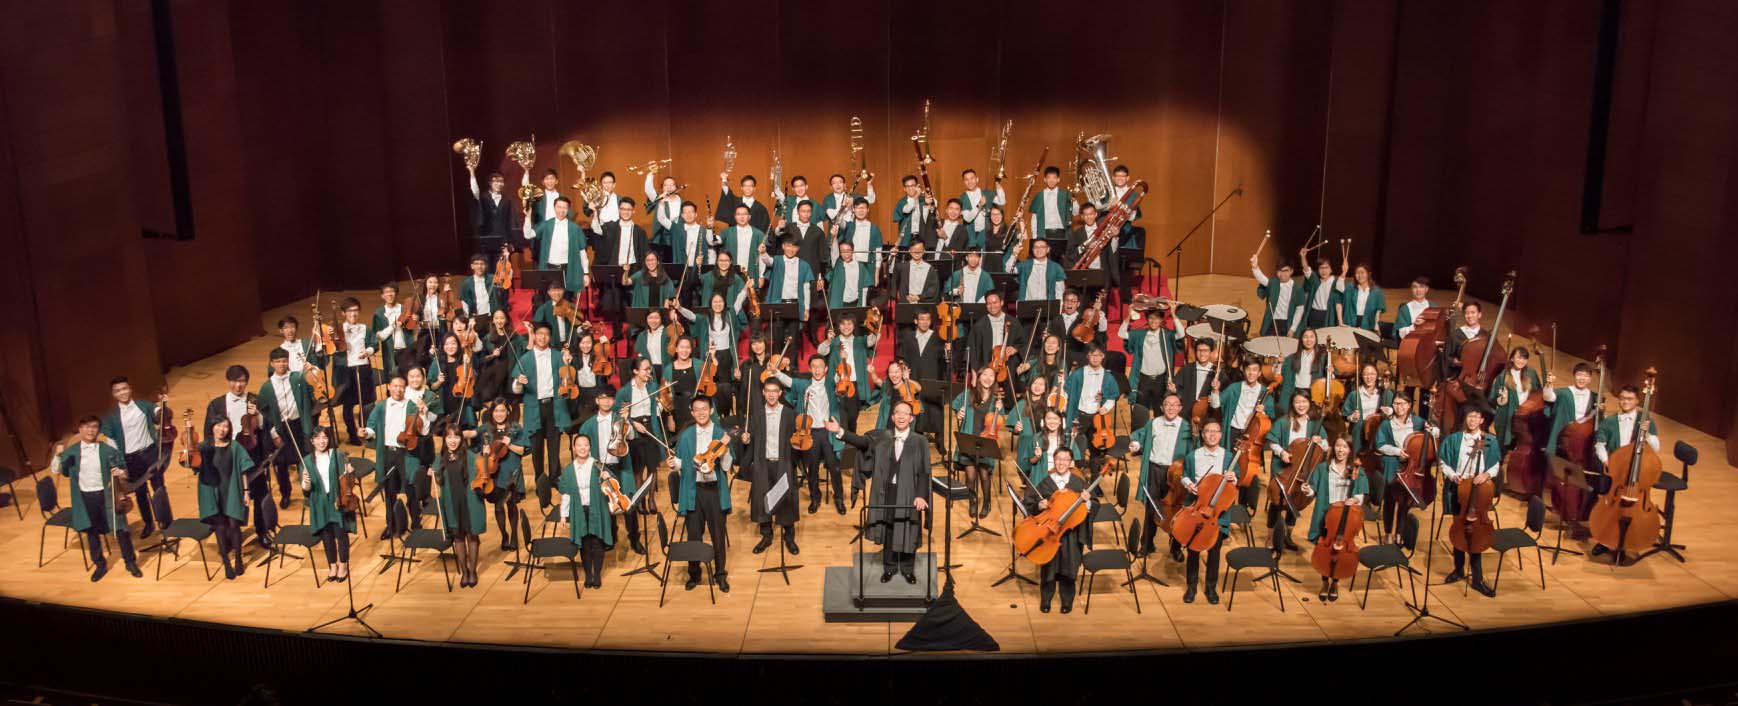 Union Philharmonic Orchestra, HKUSU